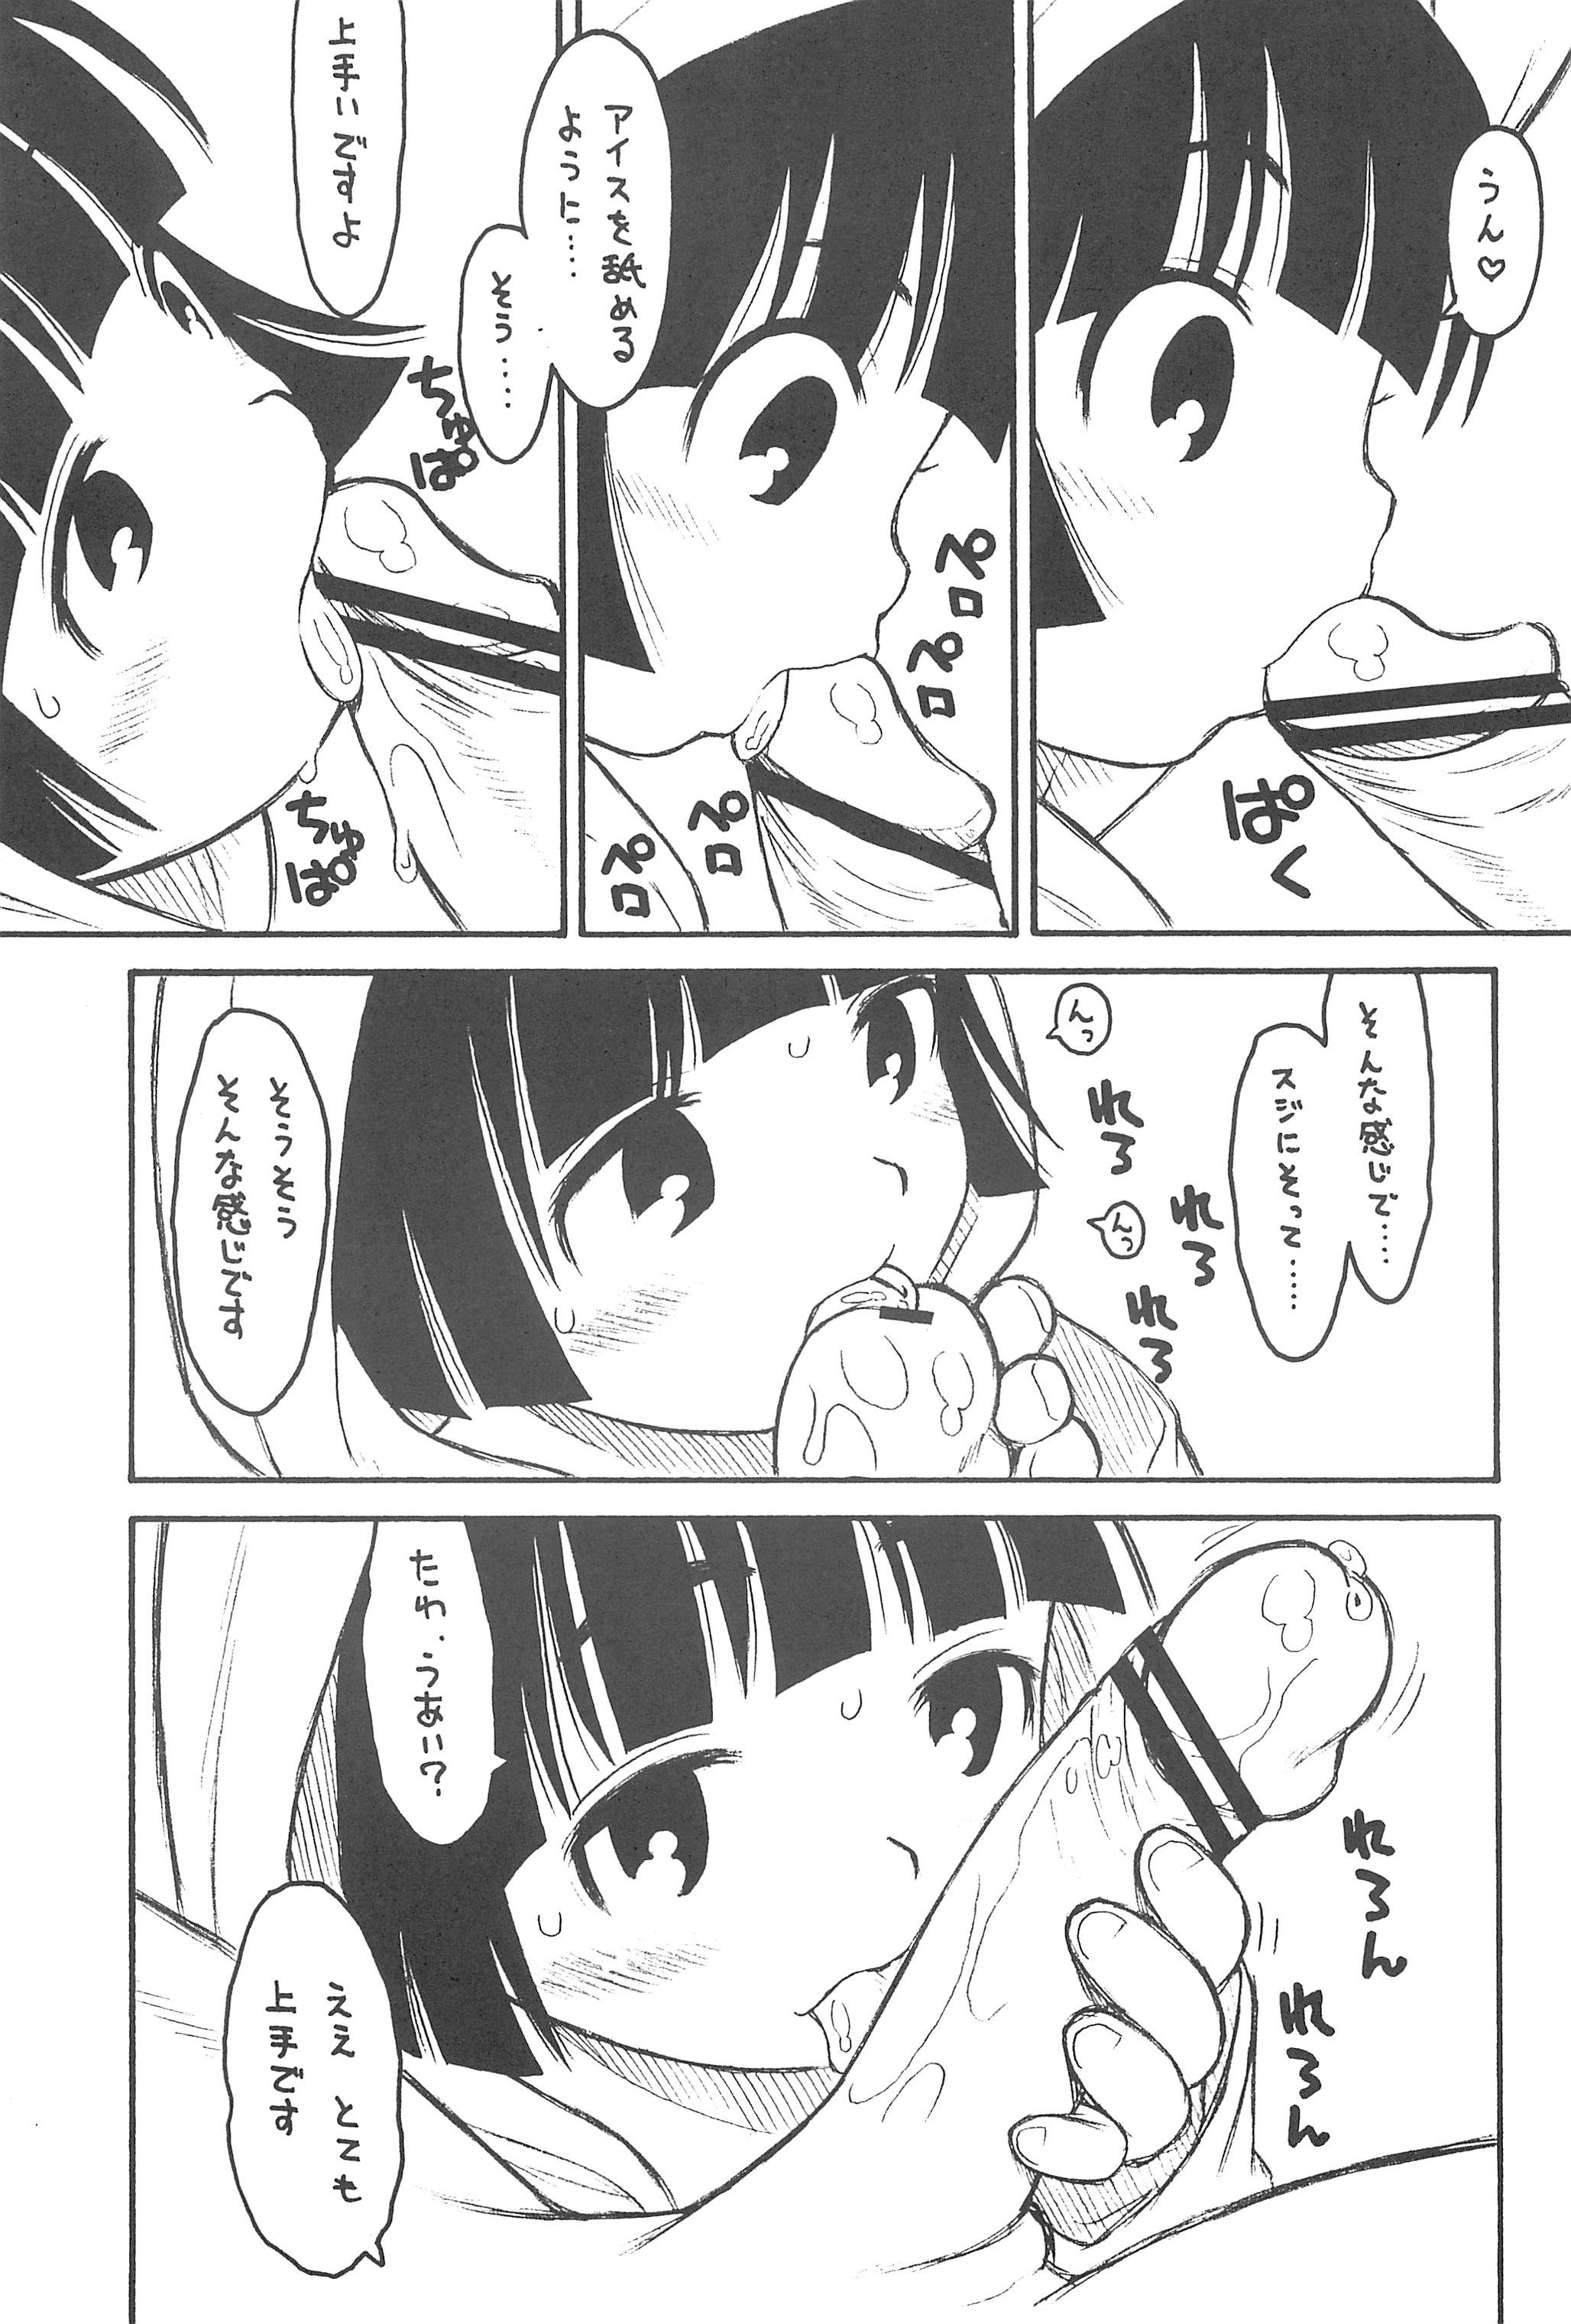 Moaning Hinnyuu Musume 23 - Neko wappa Assfuck - Page 9